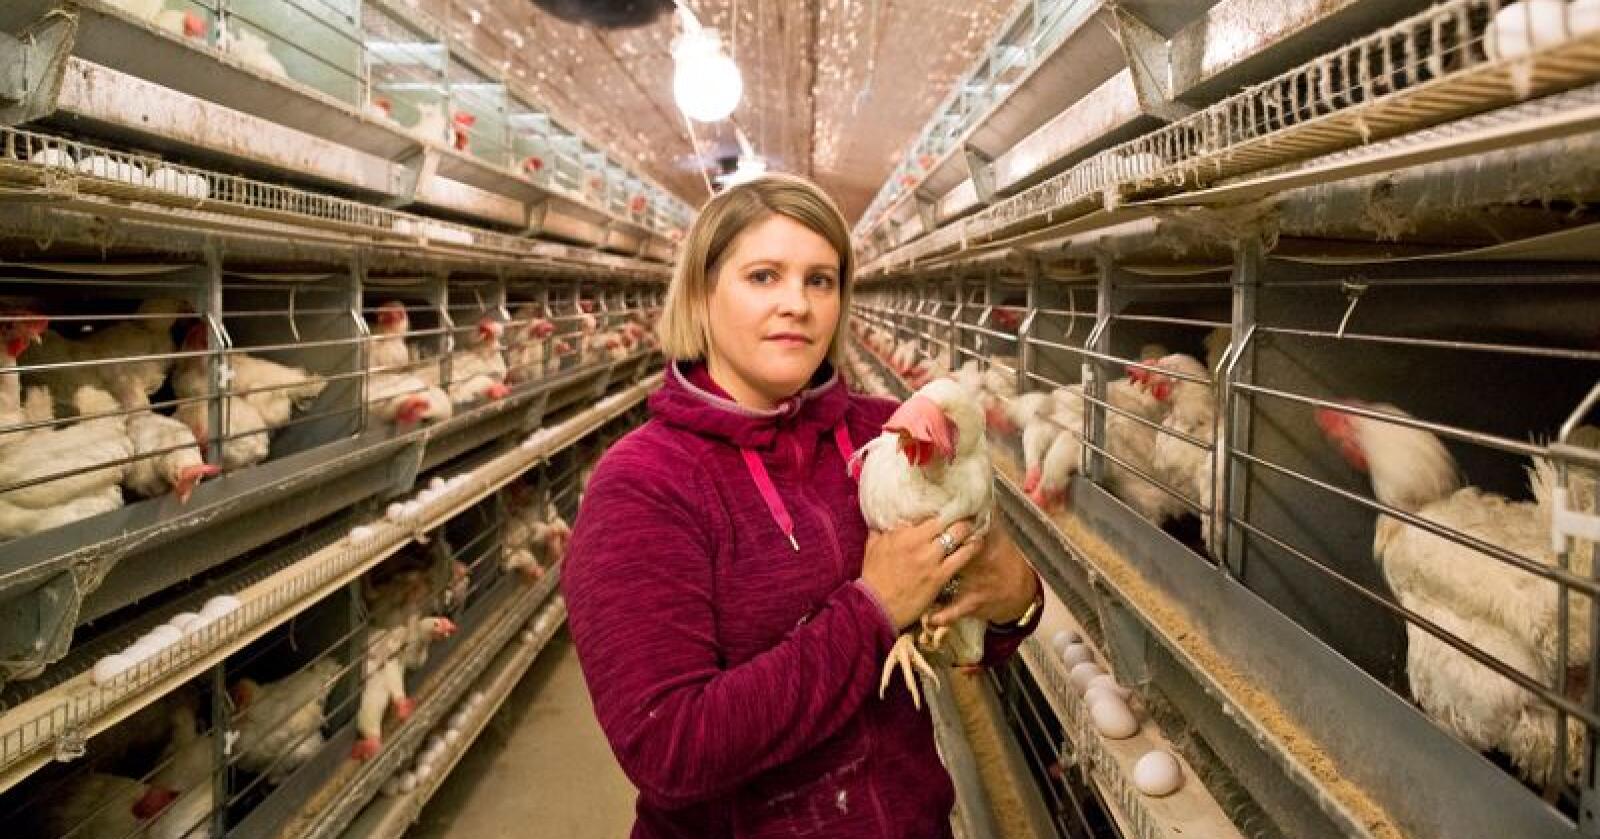 La om: Kristin Spanne Fausk (36) er bonde og eggprodusent på Finnøy utanfor Stavanger i Rogaland. Saman med faren installerte dei nye, moderne miljøbur i 2008/09. No, ti år seinare, vil ei ny stor omstilling til frittgåande bli for tungt økonomisk. Foto: Solfrid Sande